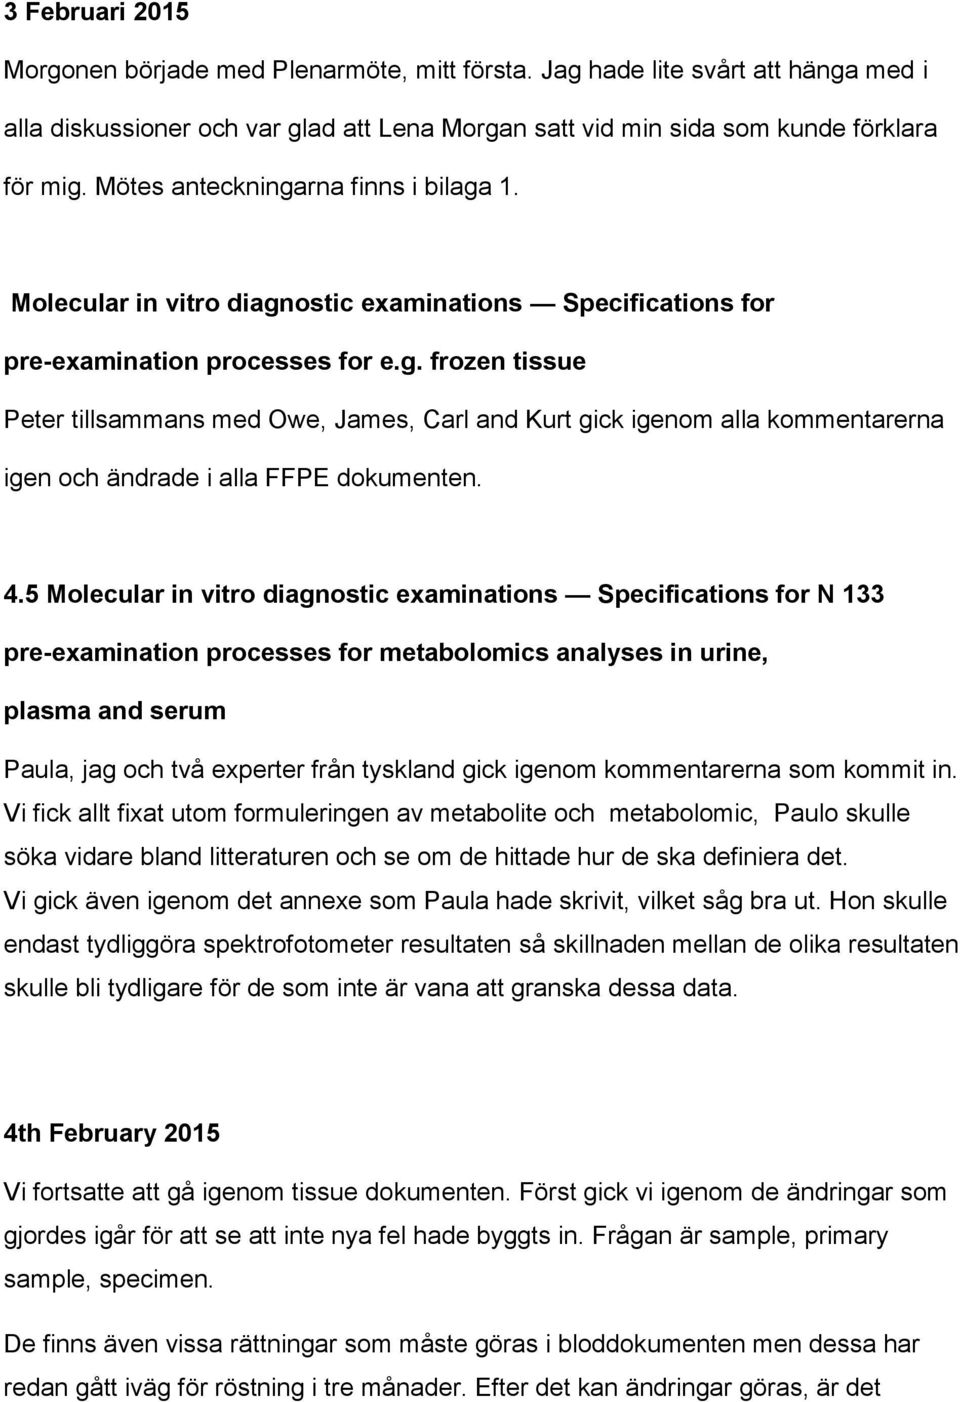 4.5 Molecular in vitro diagnostic examinations Specifications for N 133 pre-examination processes for metabolomics analyses in urine, plasma and serum Paula, jag och två experter från tyskland gick